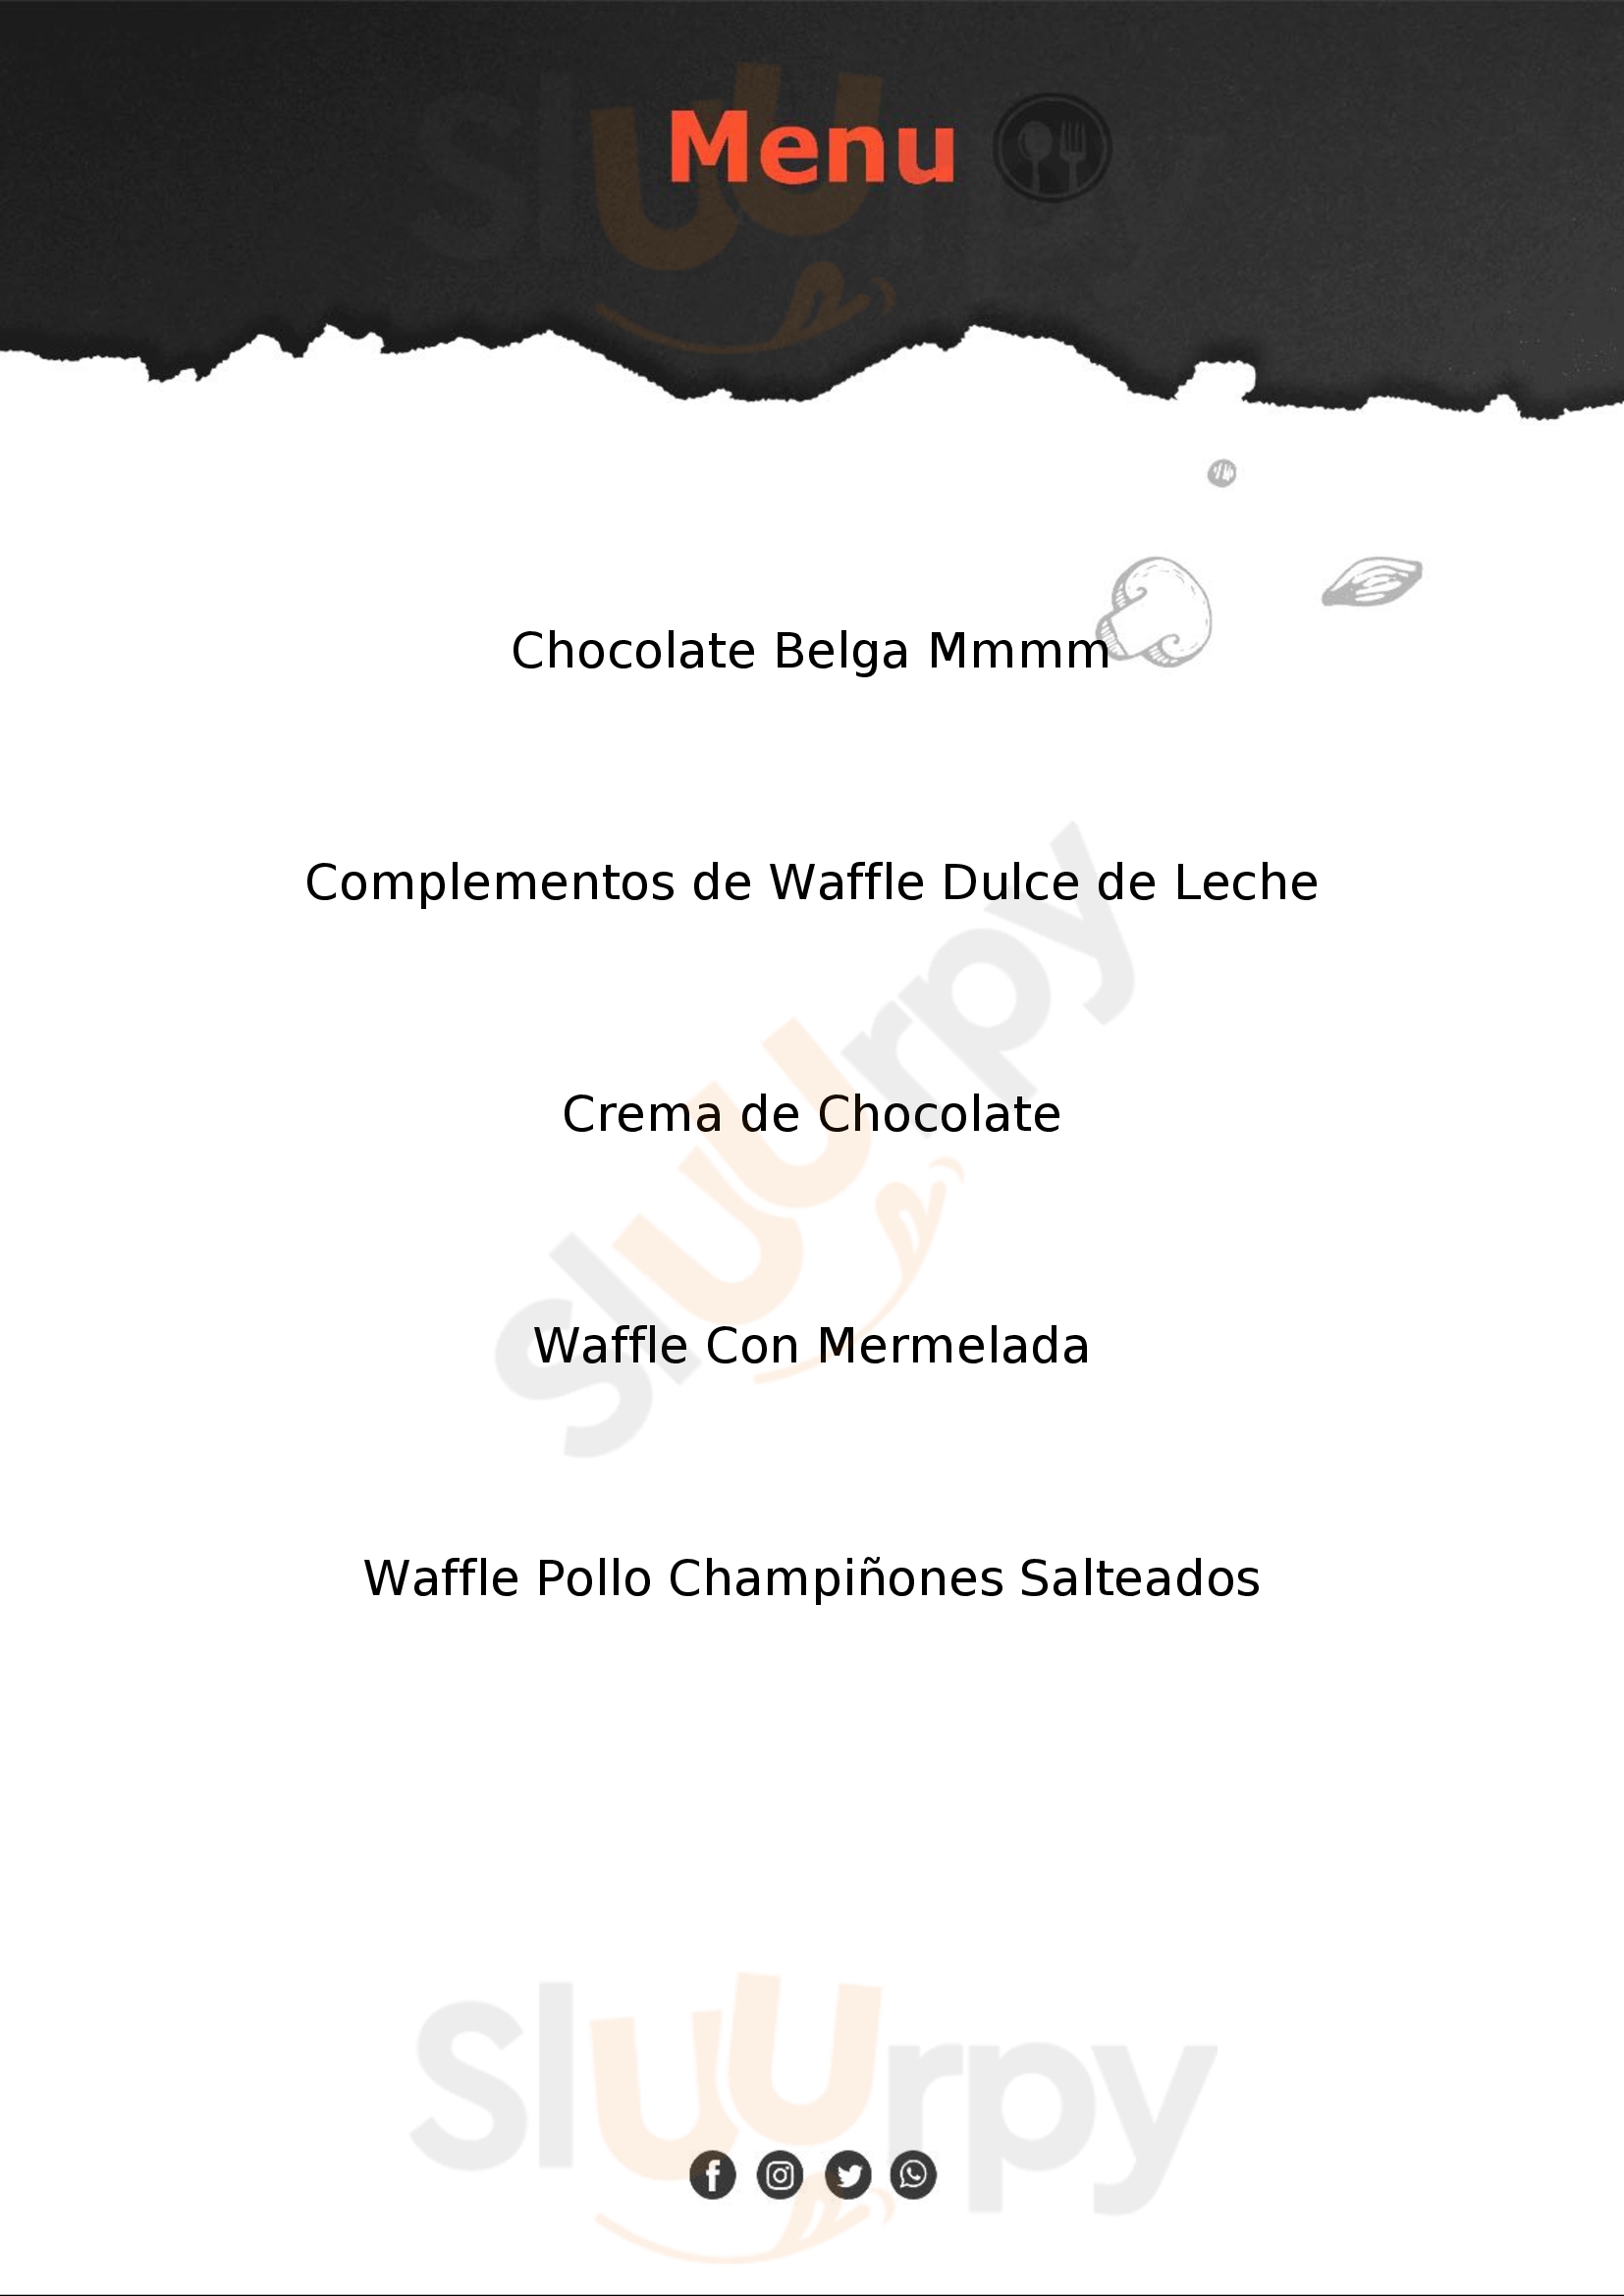 Los Waffles De Paul San Miguel de Allende Menu - 1